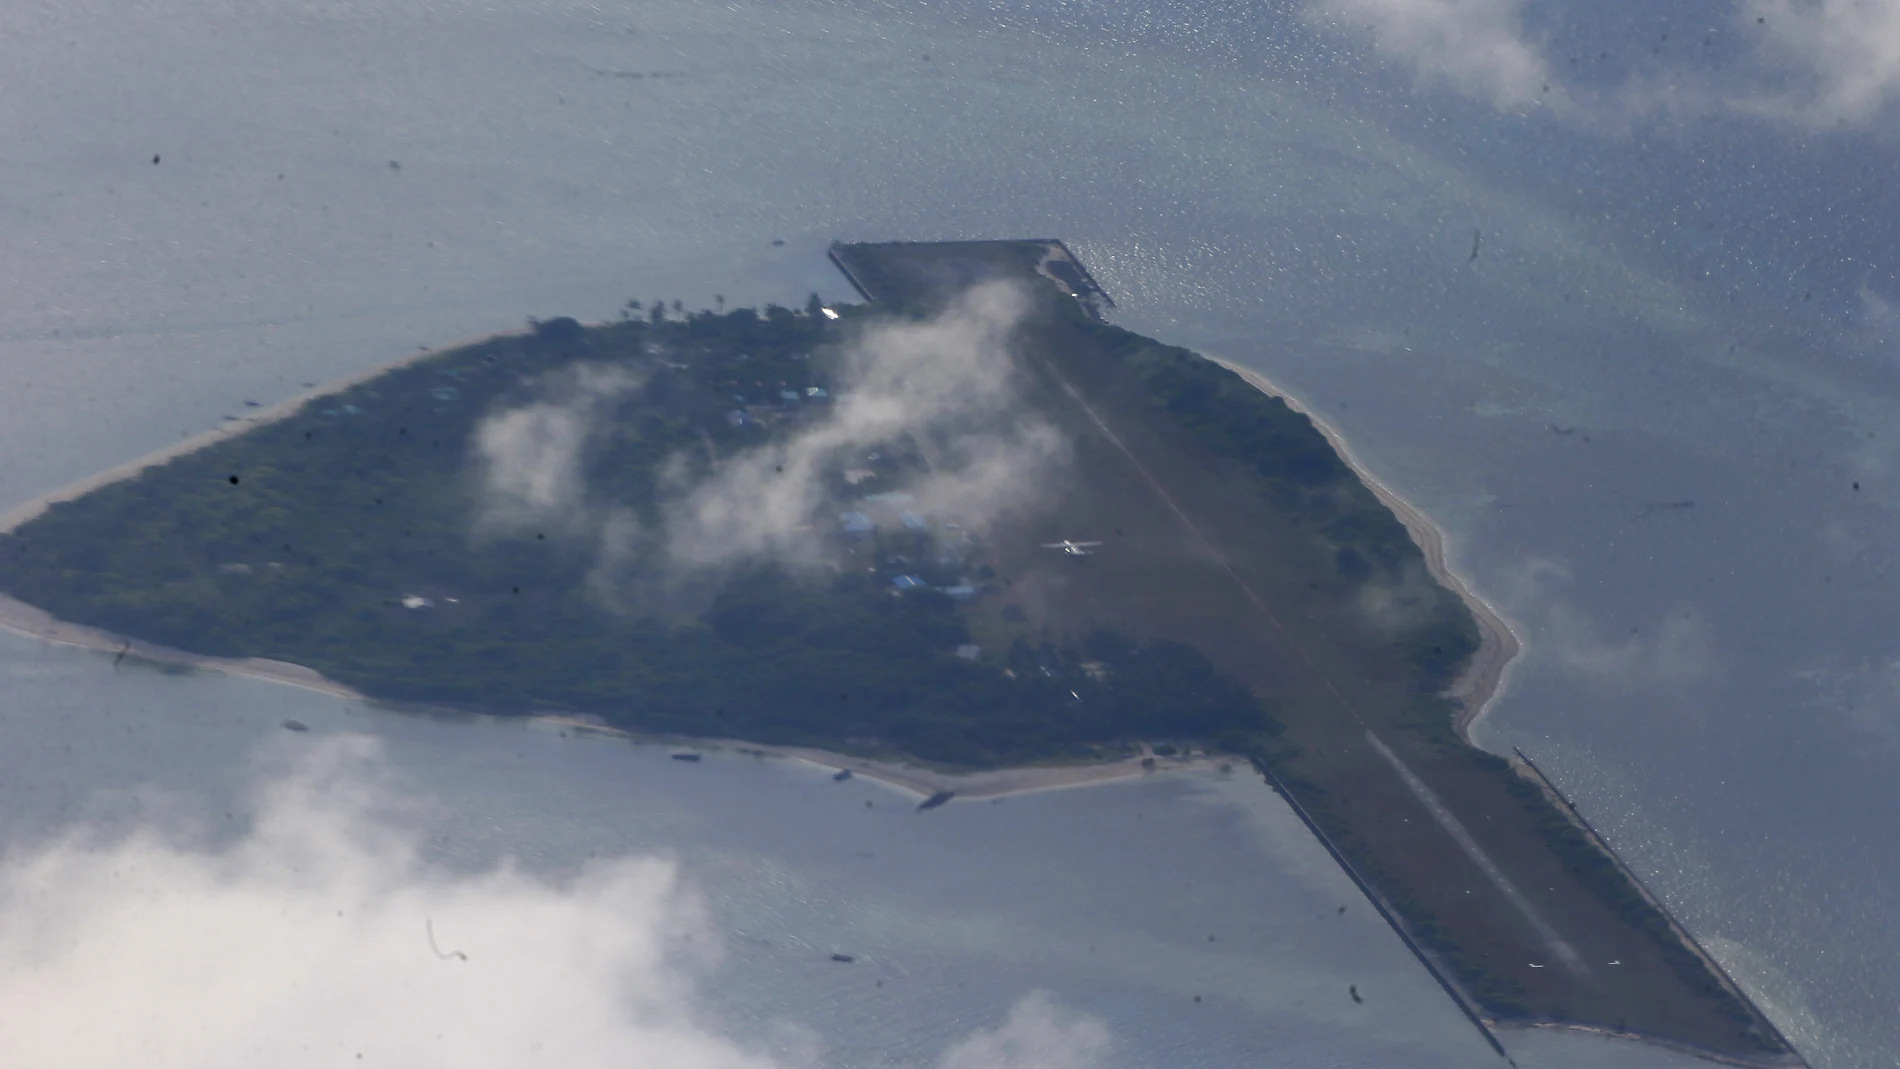 Imagen tomada desde un avión de transporte C-130 que muestra la isla de Thitu frente al Mar de China Meridional, donde un buque guardacostas chino bloqueó dos veces el barco naval filipino antes de apoderarse de los restos que remolcaba